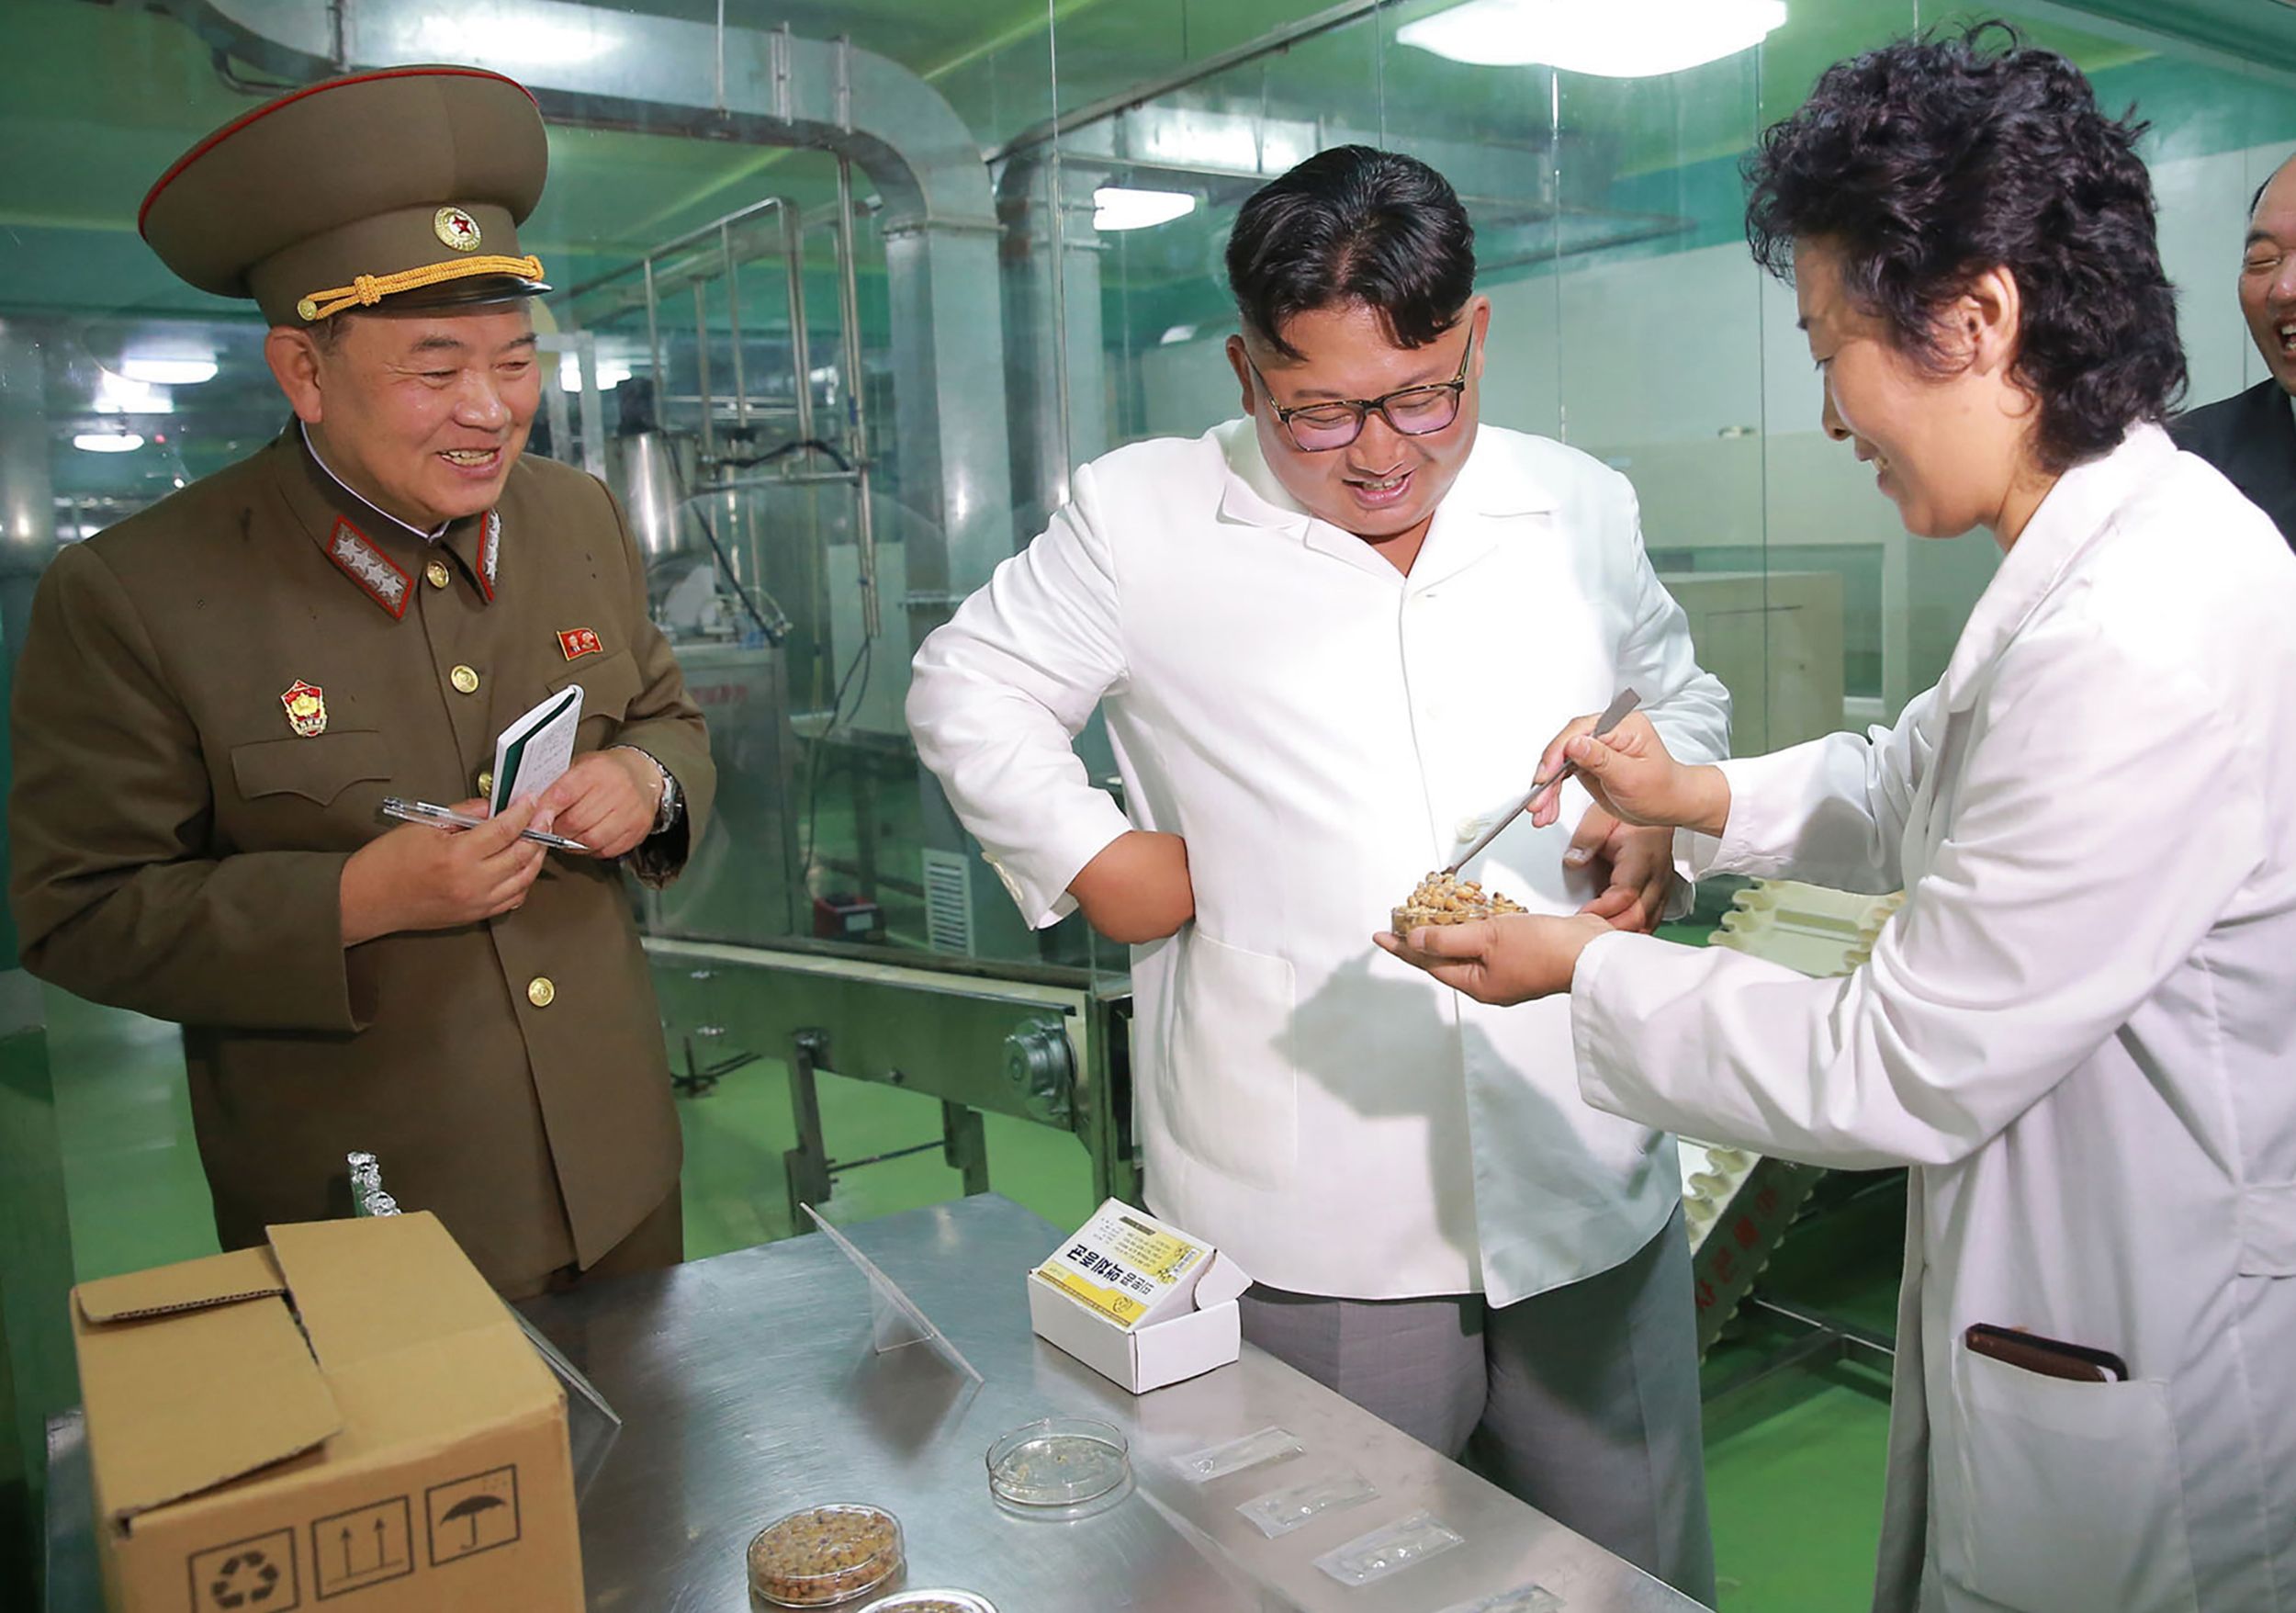  فحص زعيم كوريا الشمالية لأحد منتجات المصنع 